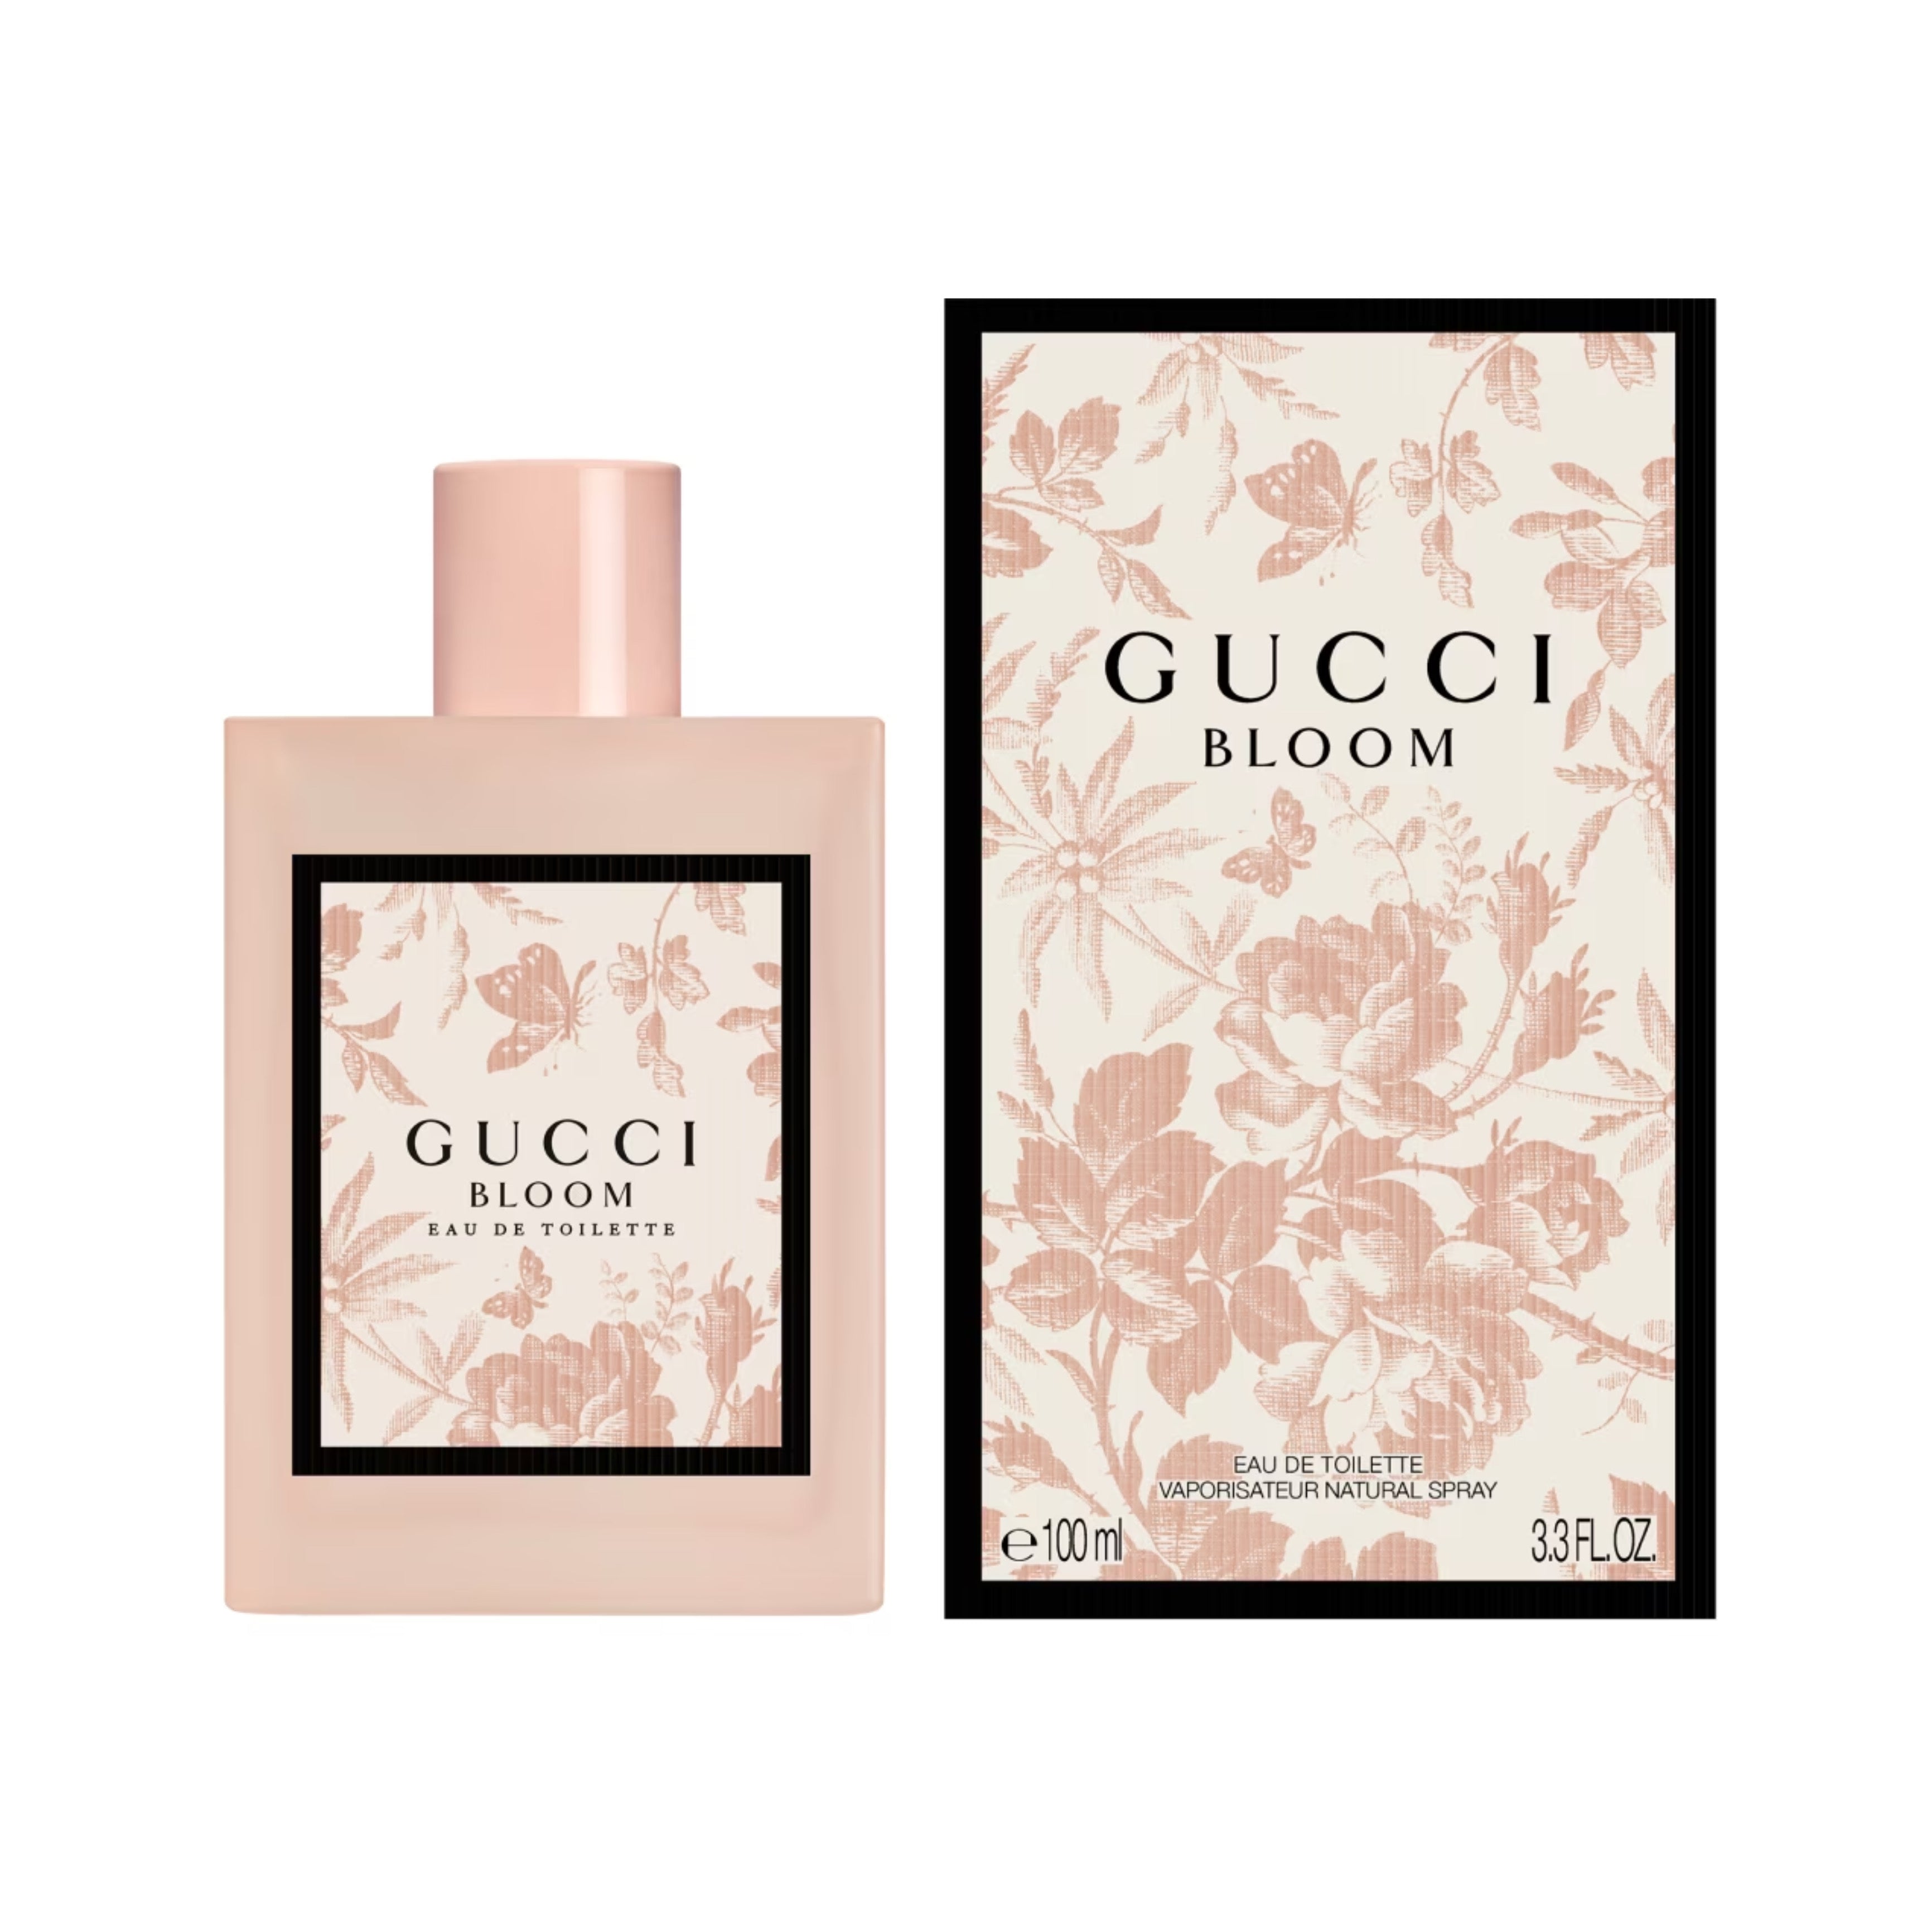 Gucci Bloom EAU DE TOILETTE